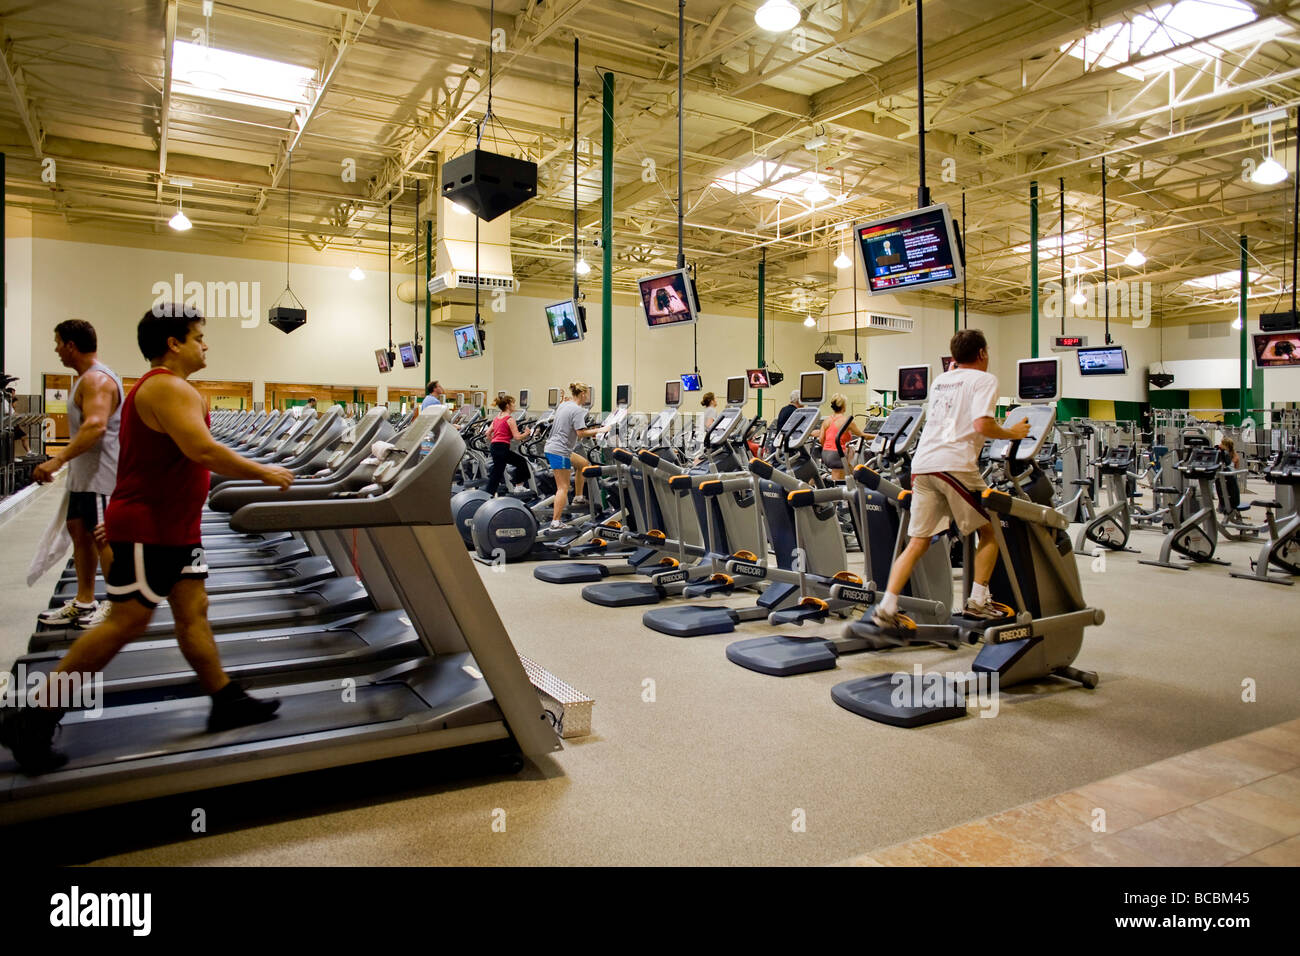 Fernsehgeräte, abgestimmt auf verschiedene Kanäle umleiten Übung Buffs in einem Southern California Fitnesscenter Stockfoto